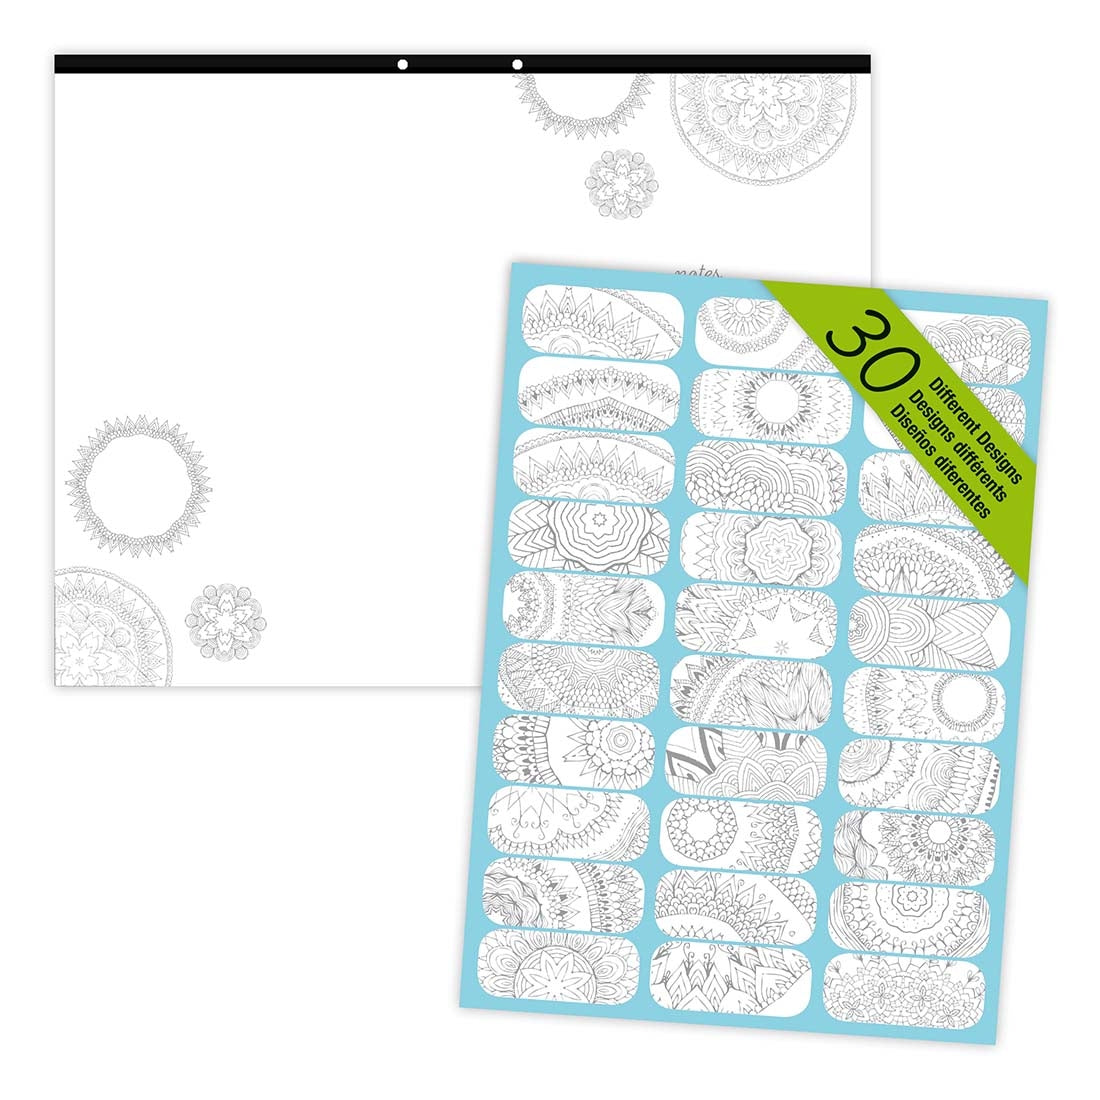 DoodlePlan™Coloring Desk Pad - Undated#color_mandala